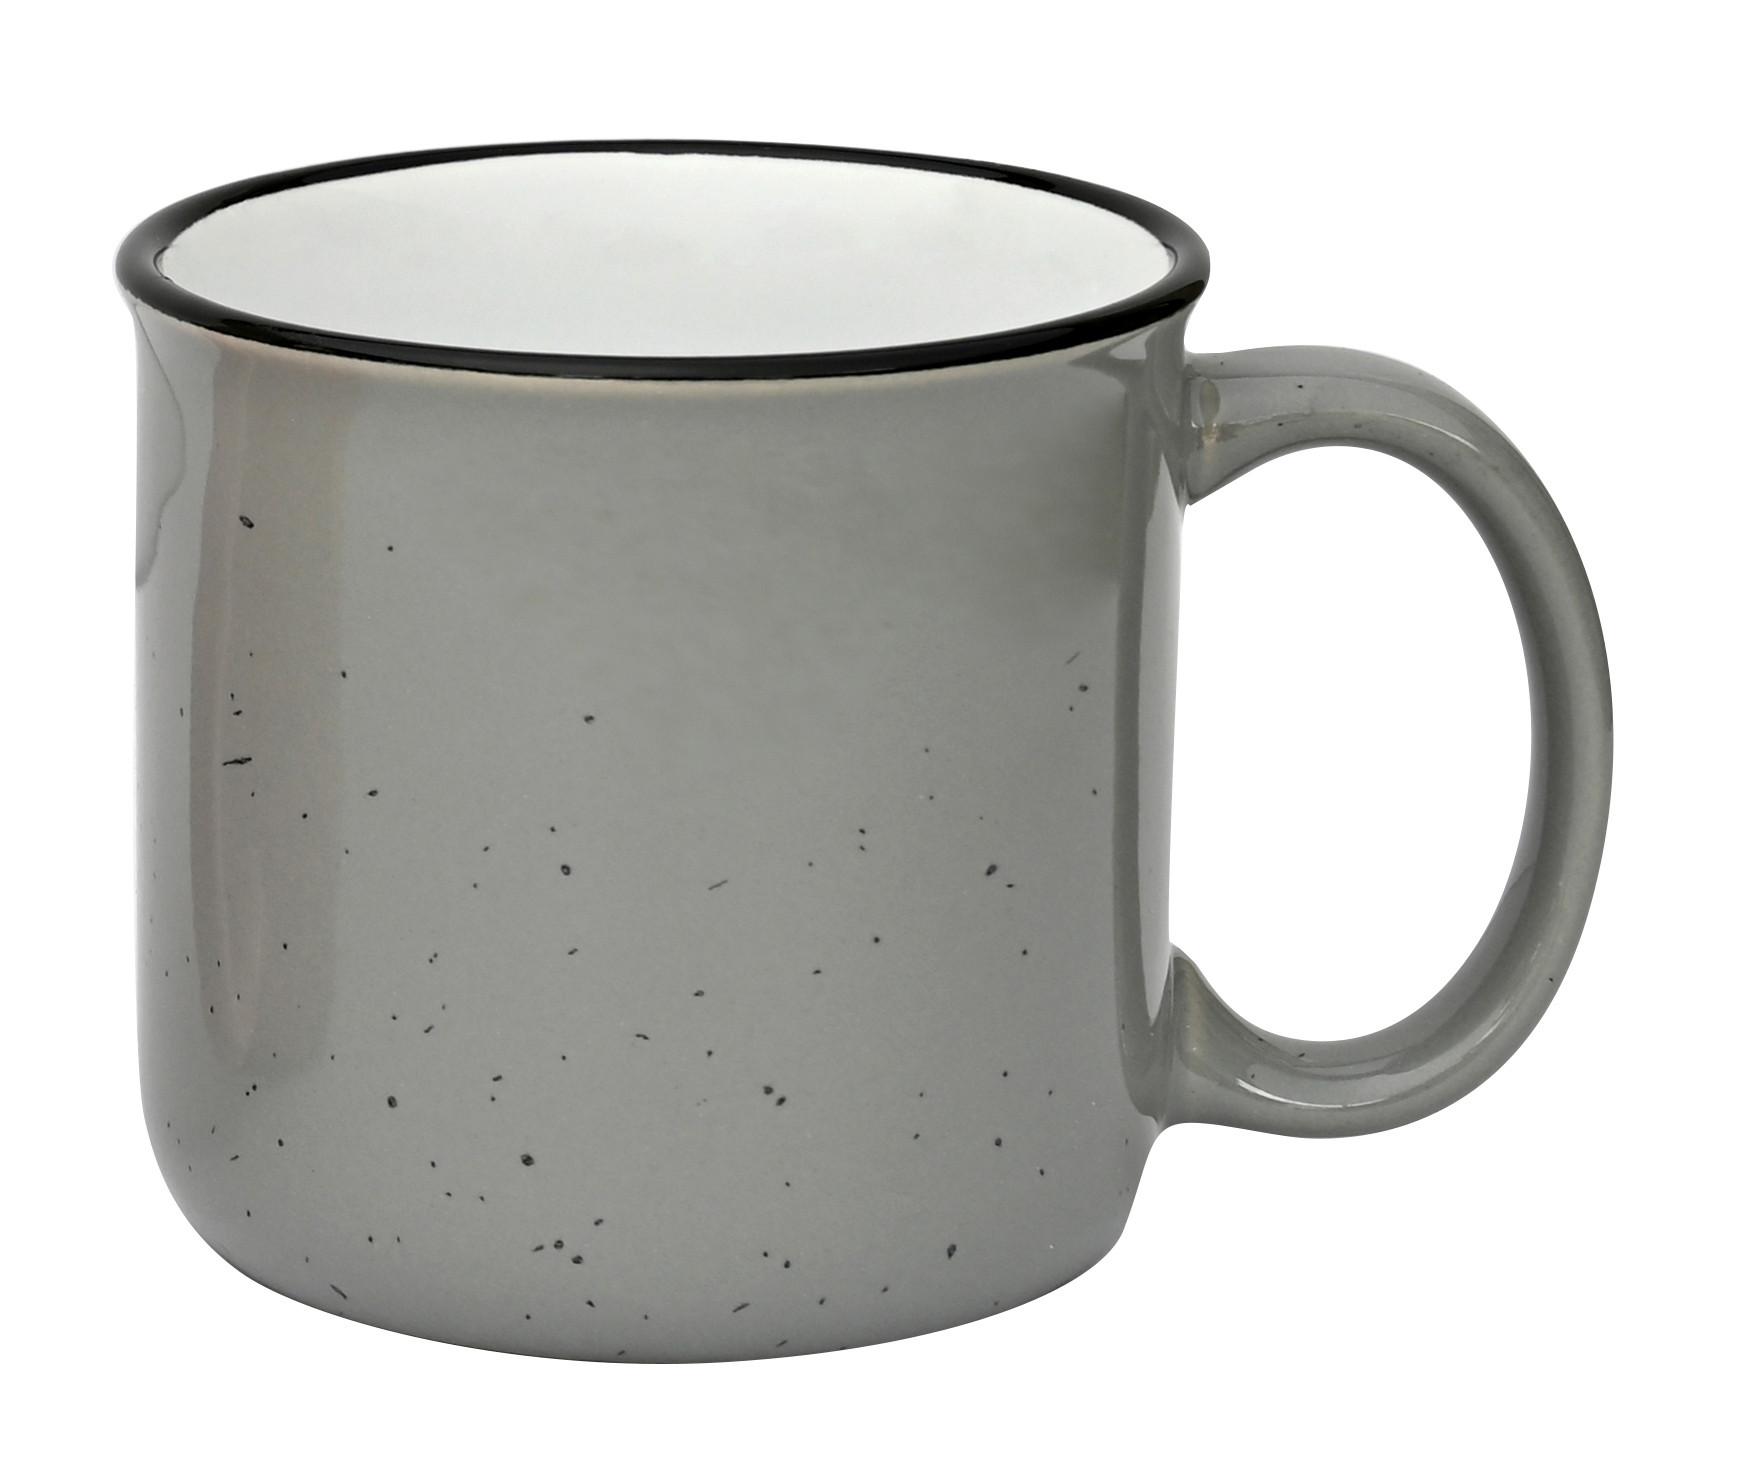 Hrnek Na Kávu Tina - šedá, Konvenční, keramika (8,8/8,5cm) - Modern Living